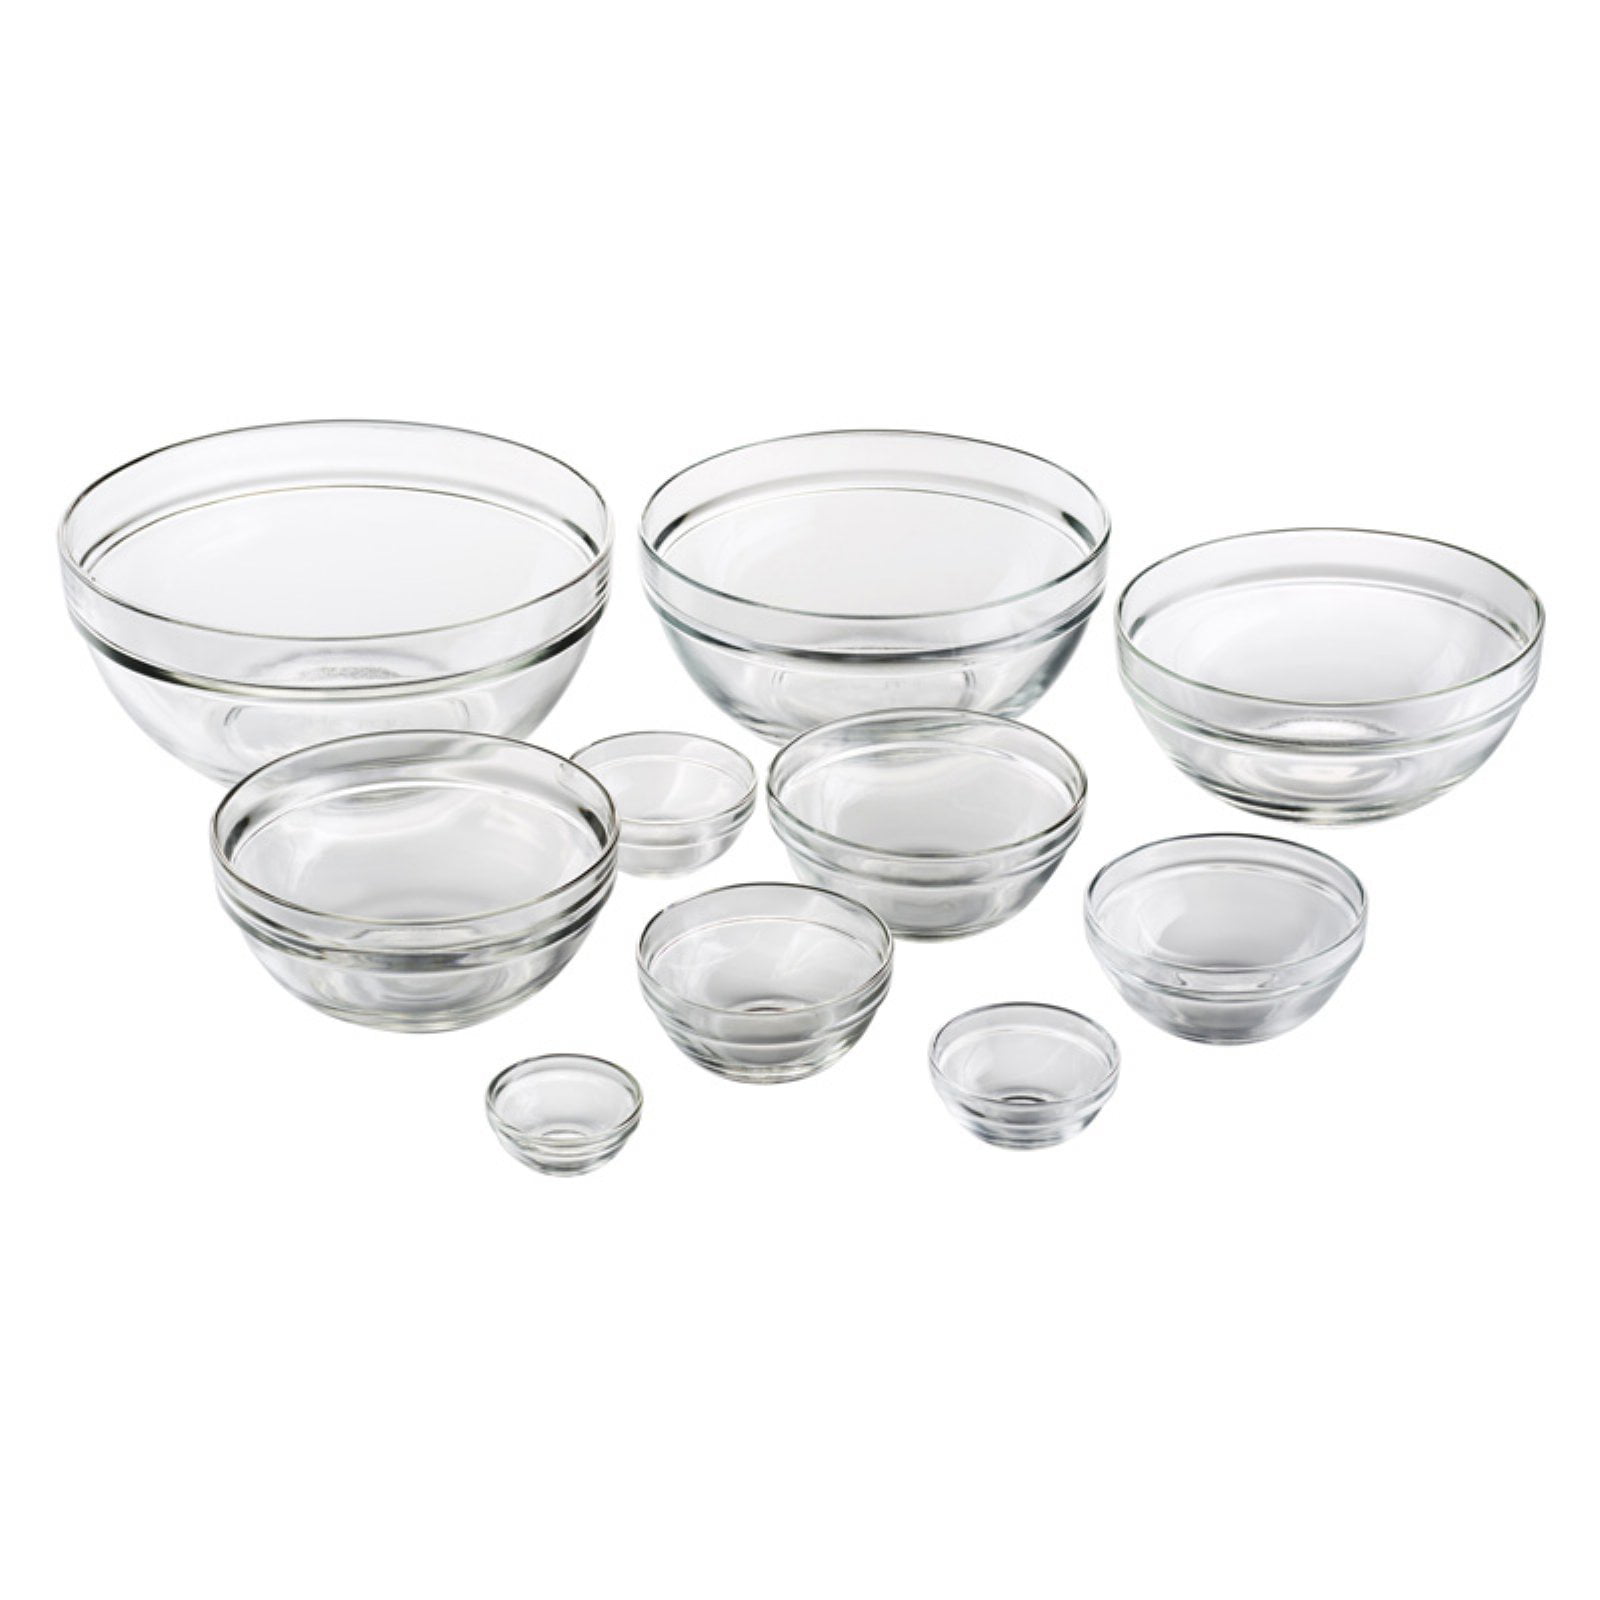 Artland 10 Piece Glass Mixing Bowl Set